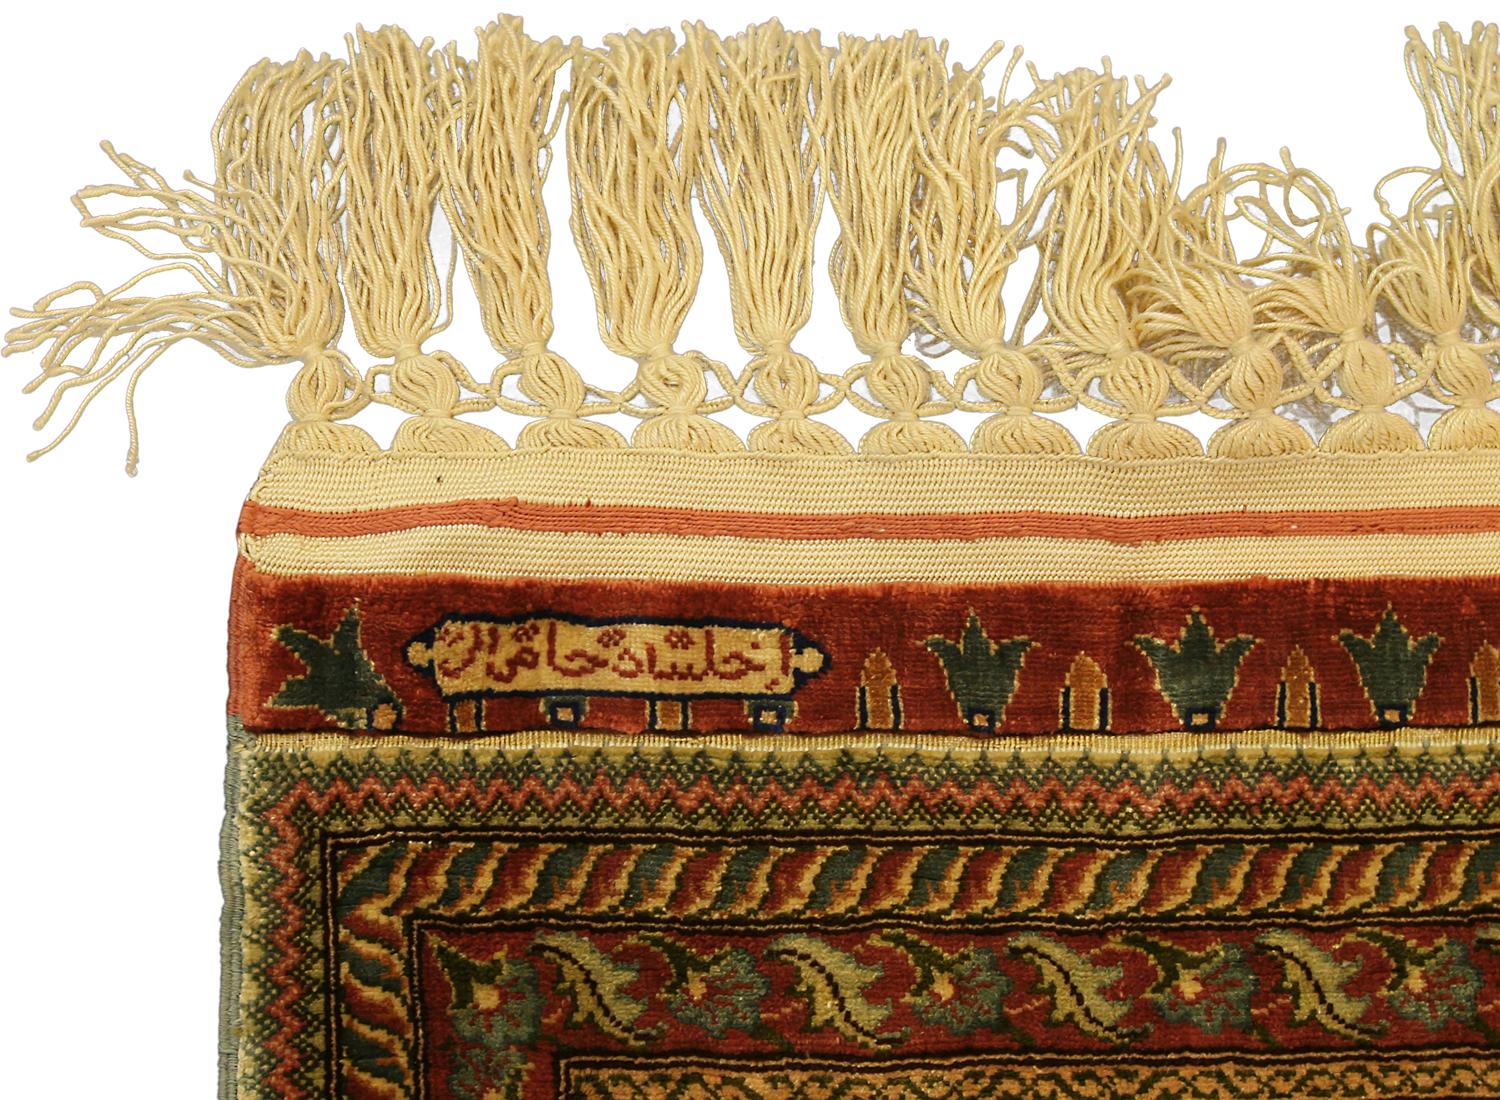 Dies ist ein türkischer Hereke-Teppich mit Seiden- und Metallfäden, der zu Beginn des 21. Jahrhunderts in der Türkei gewebt wurde (ca. 2000-2010) und 135 x 89 cm groß ist. Das Design besteht aus zwei Säulen mit drei sich wiederholenden Medaillons,